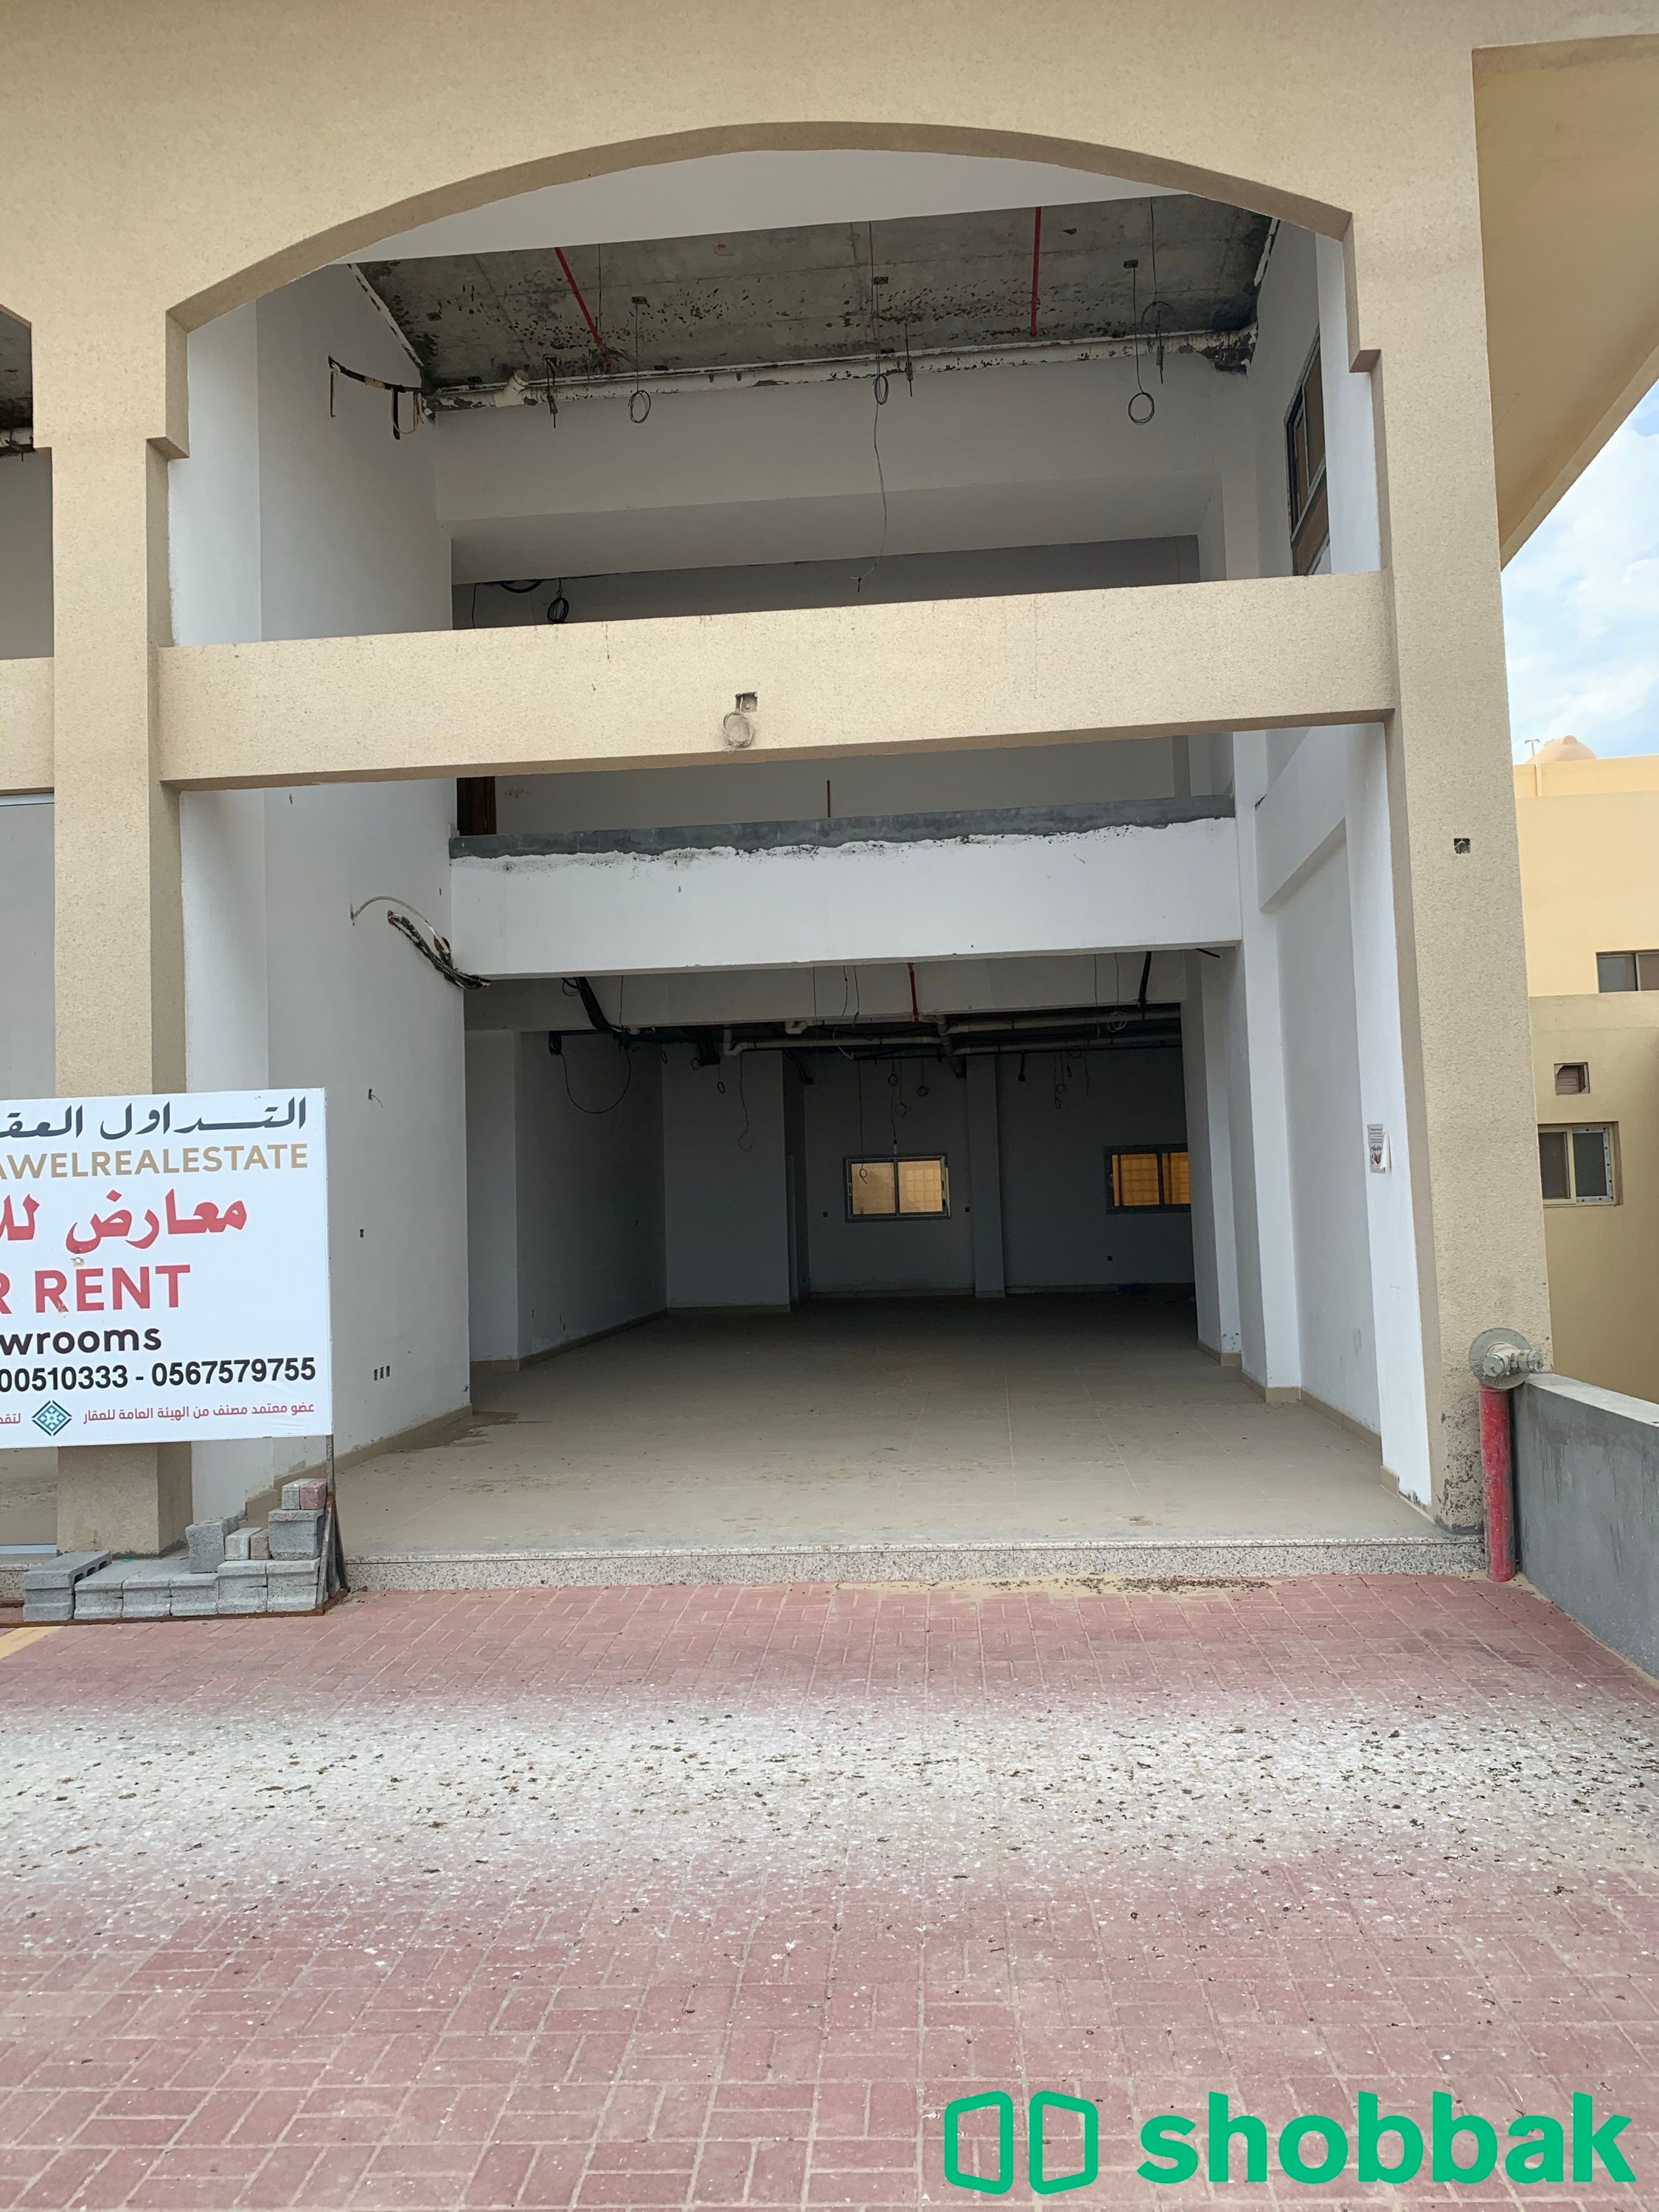 محل تجاري للايجار حي النورس شباك السعودية